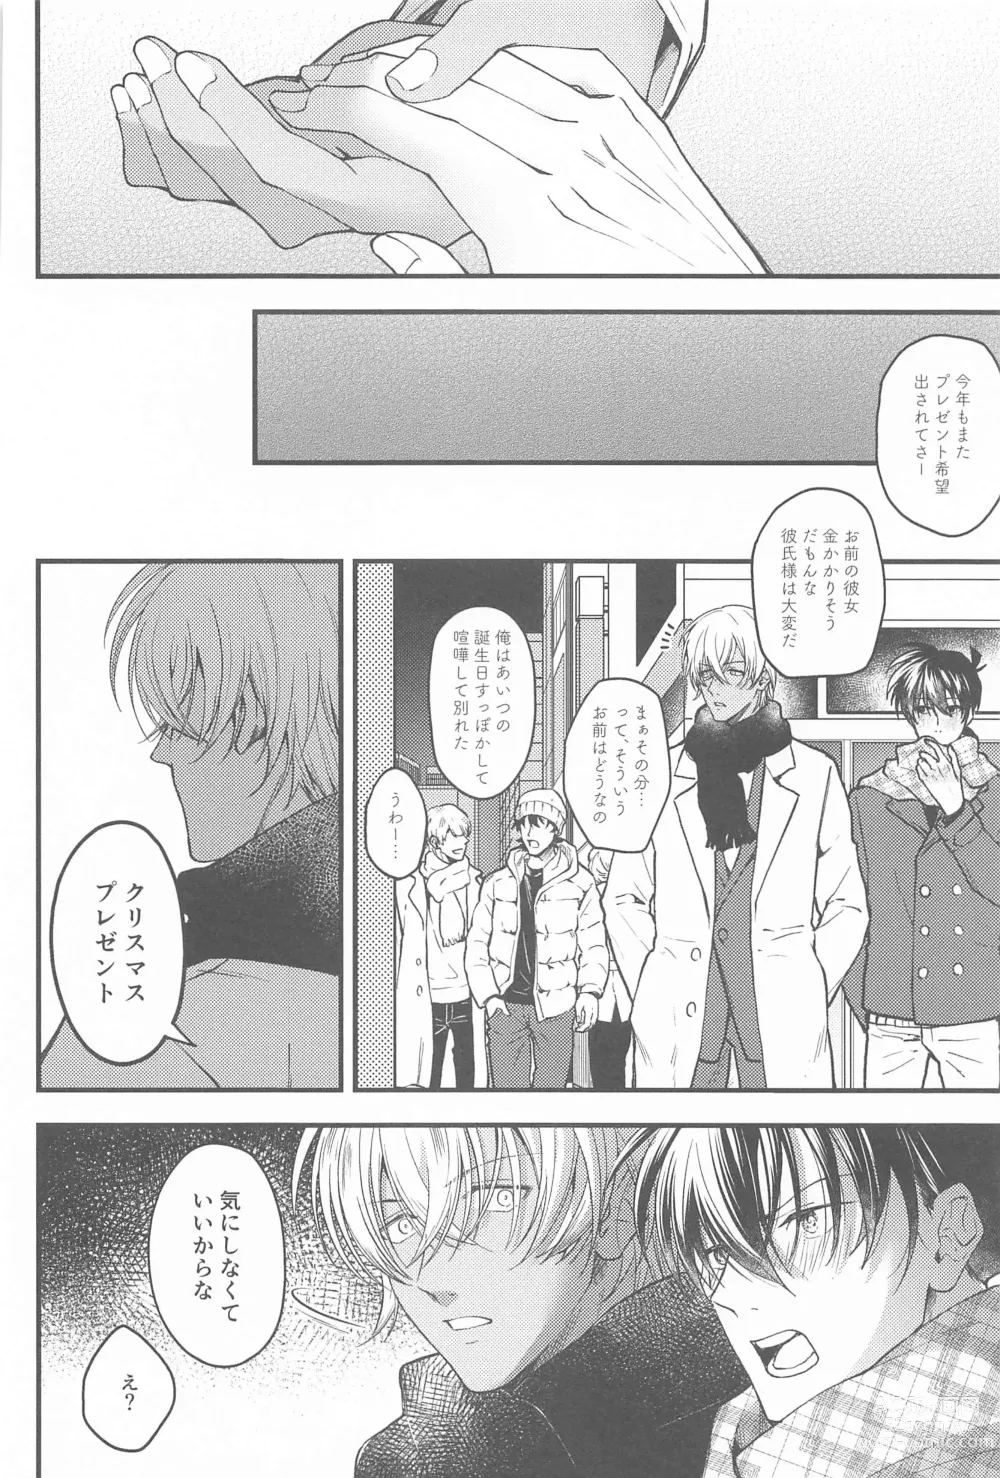 Page 13 of doujinshi Seinaru Yoru ni Serenade o